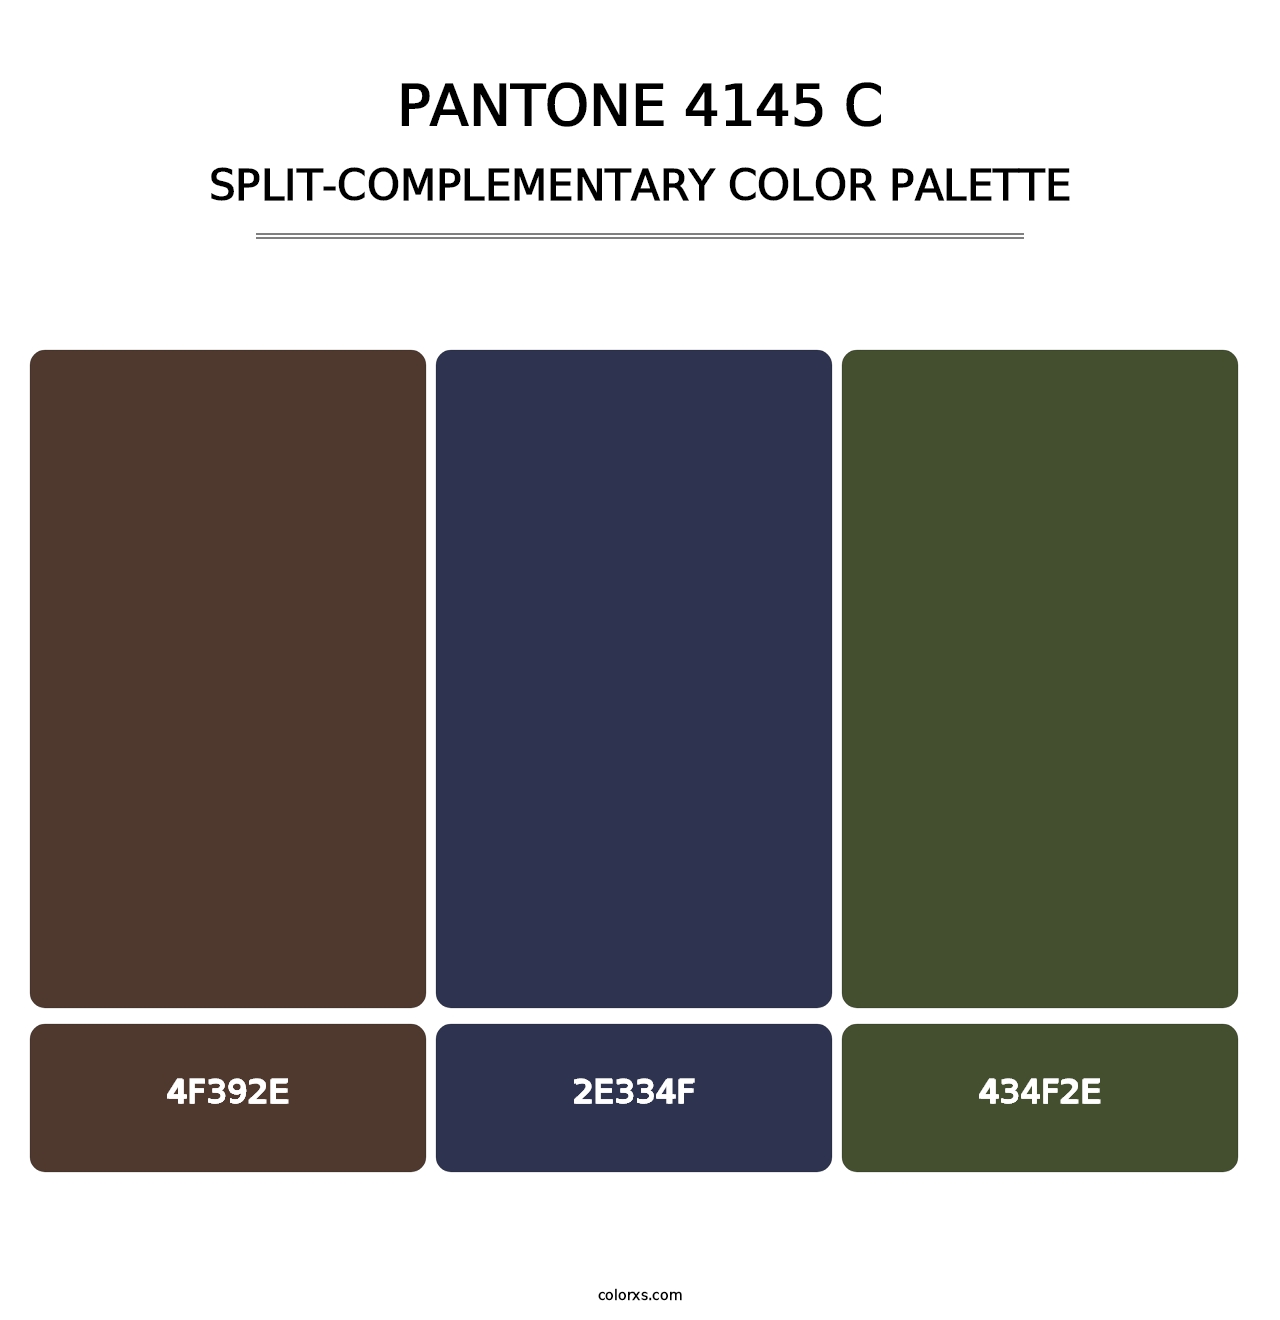 PANTONE 4145 C - Split-Complementary Color Palette